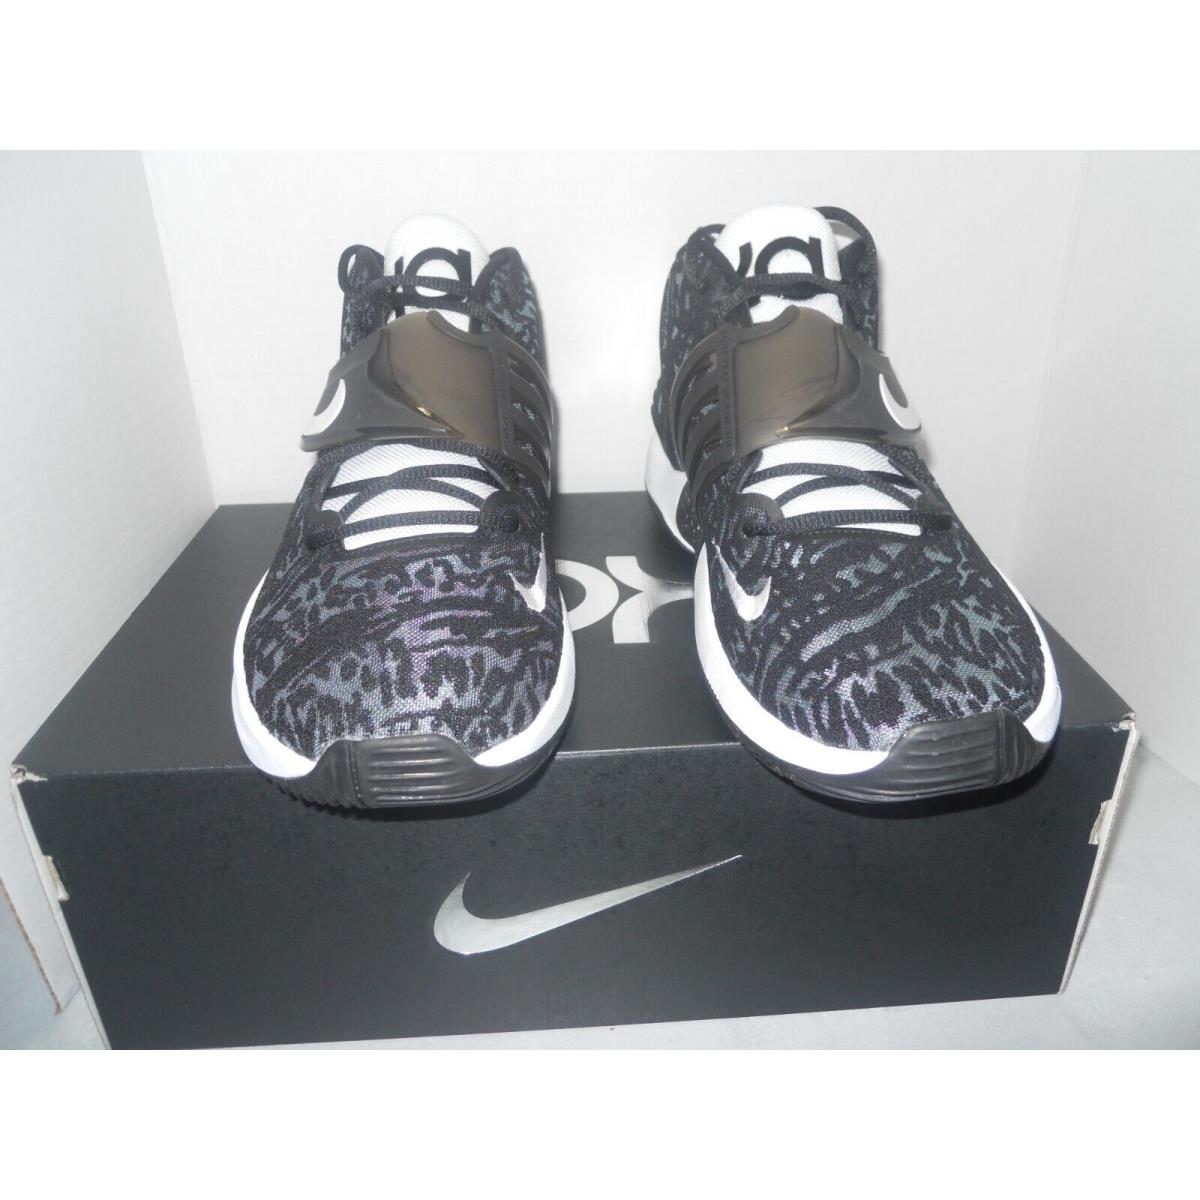 Nike shoes PROMO - Black 2